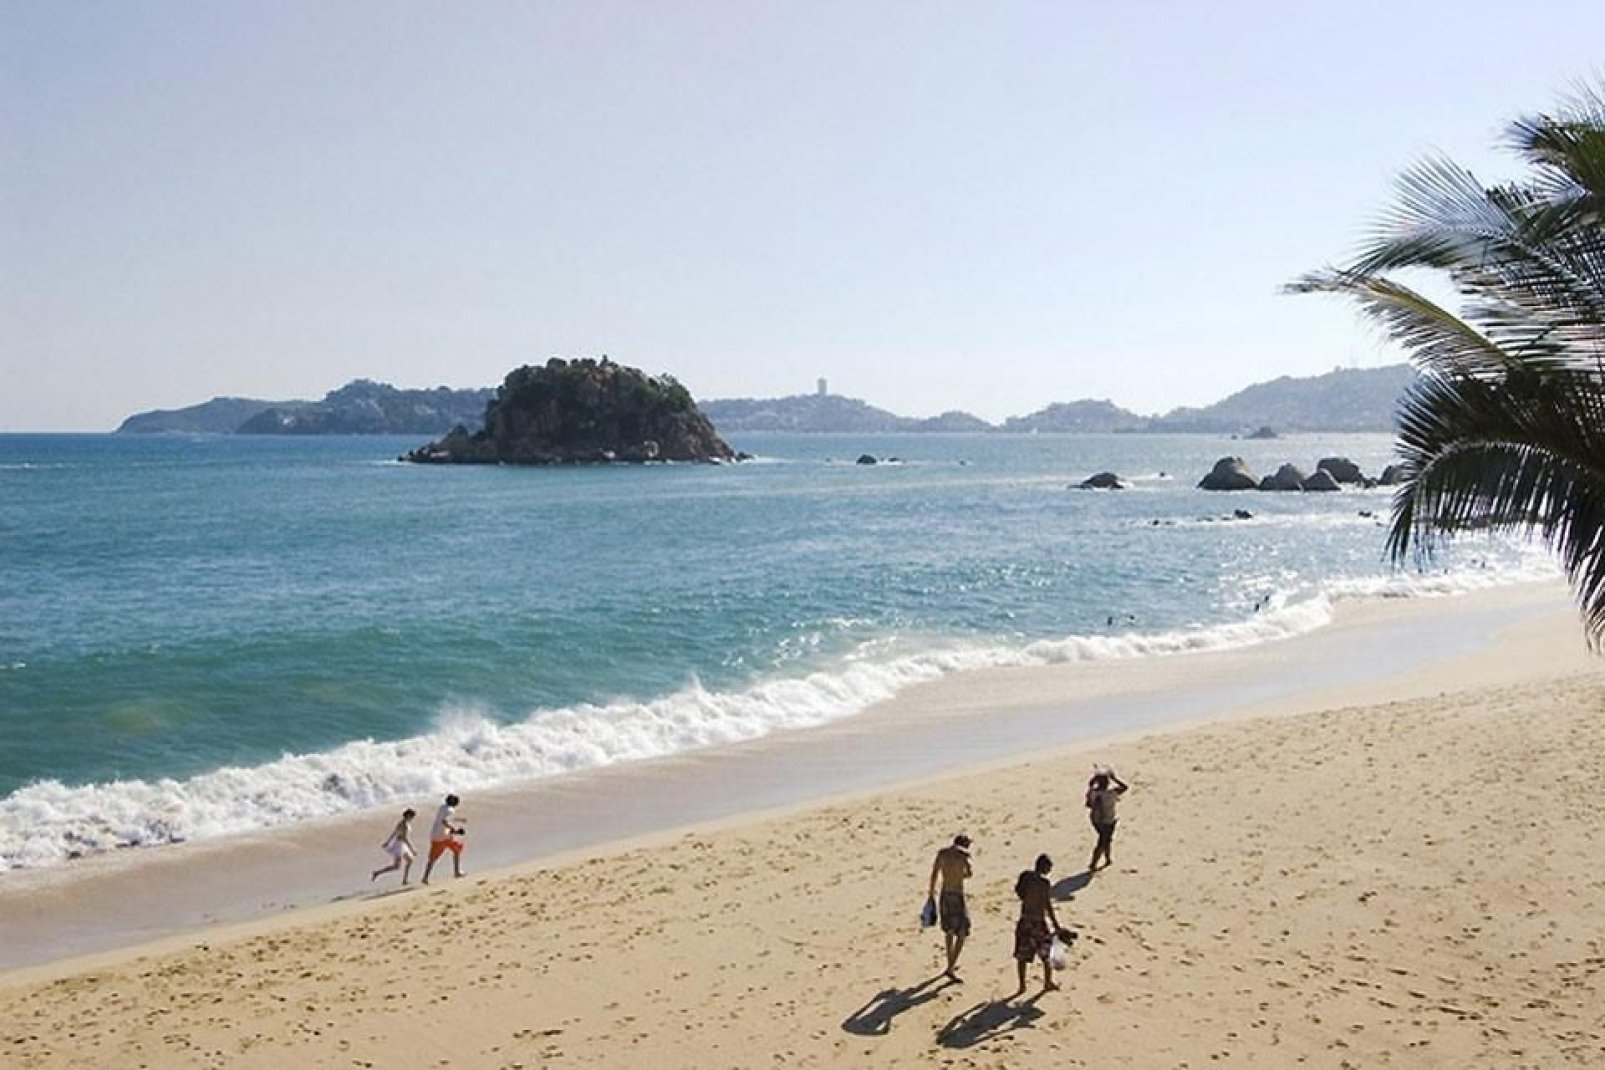 Le spiagge di Acapulco permettono ai turisti di isolarsi dal caos cittadino.